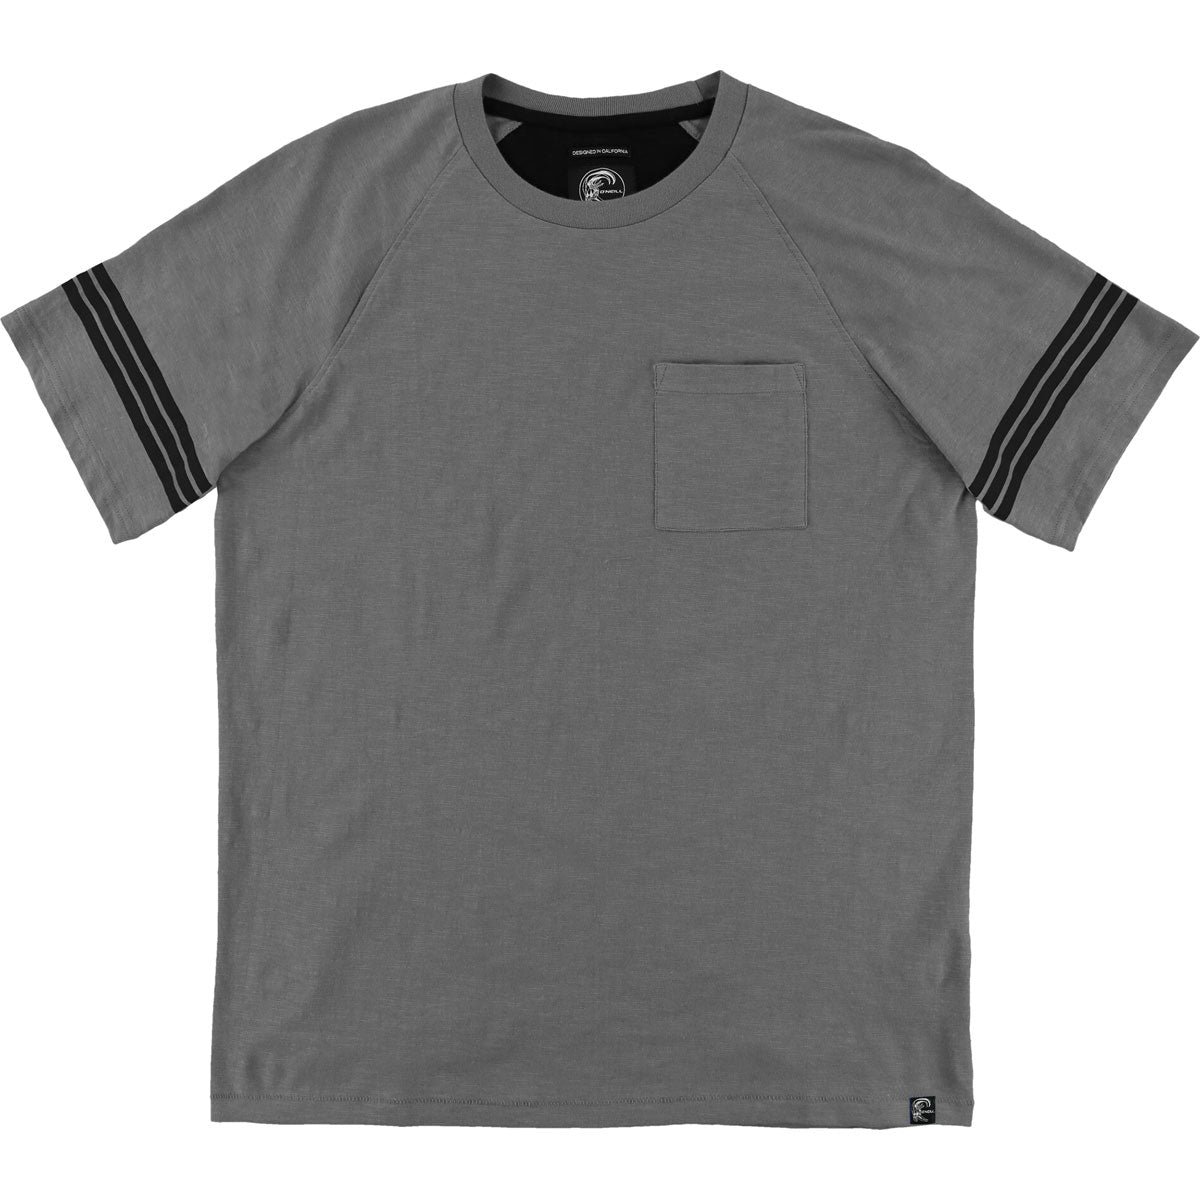 O'Neill Harrison Crew Pocket Men's Short-Sleeve Shirts - Heather Gray